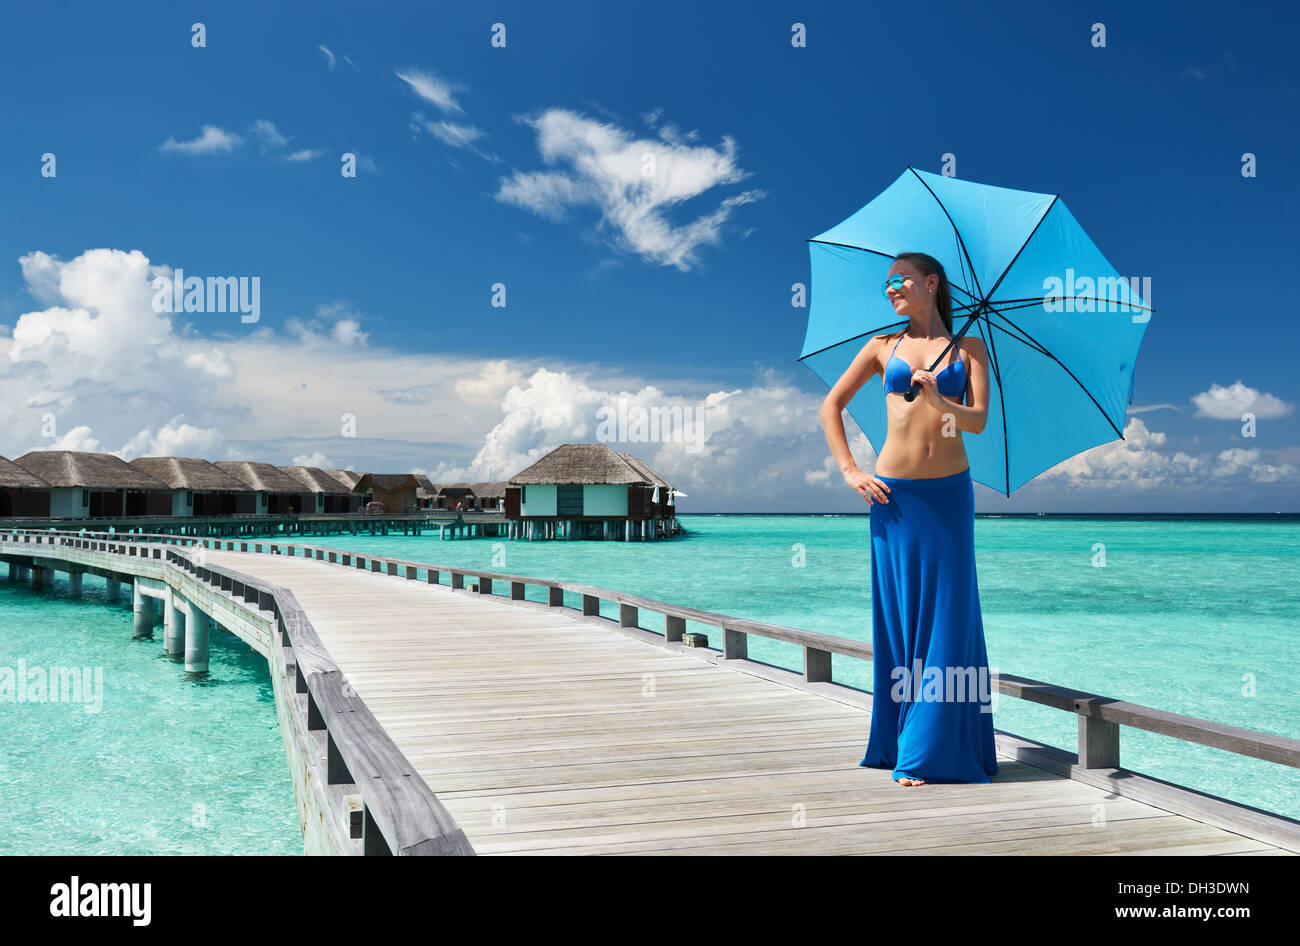 Woman on a beach jetty at Maldives Stock Photo